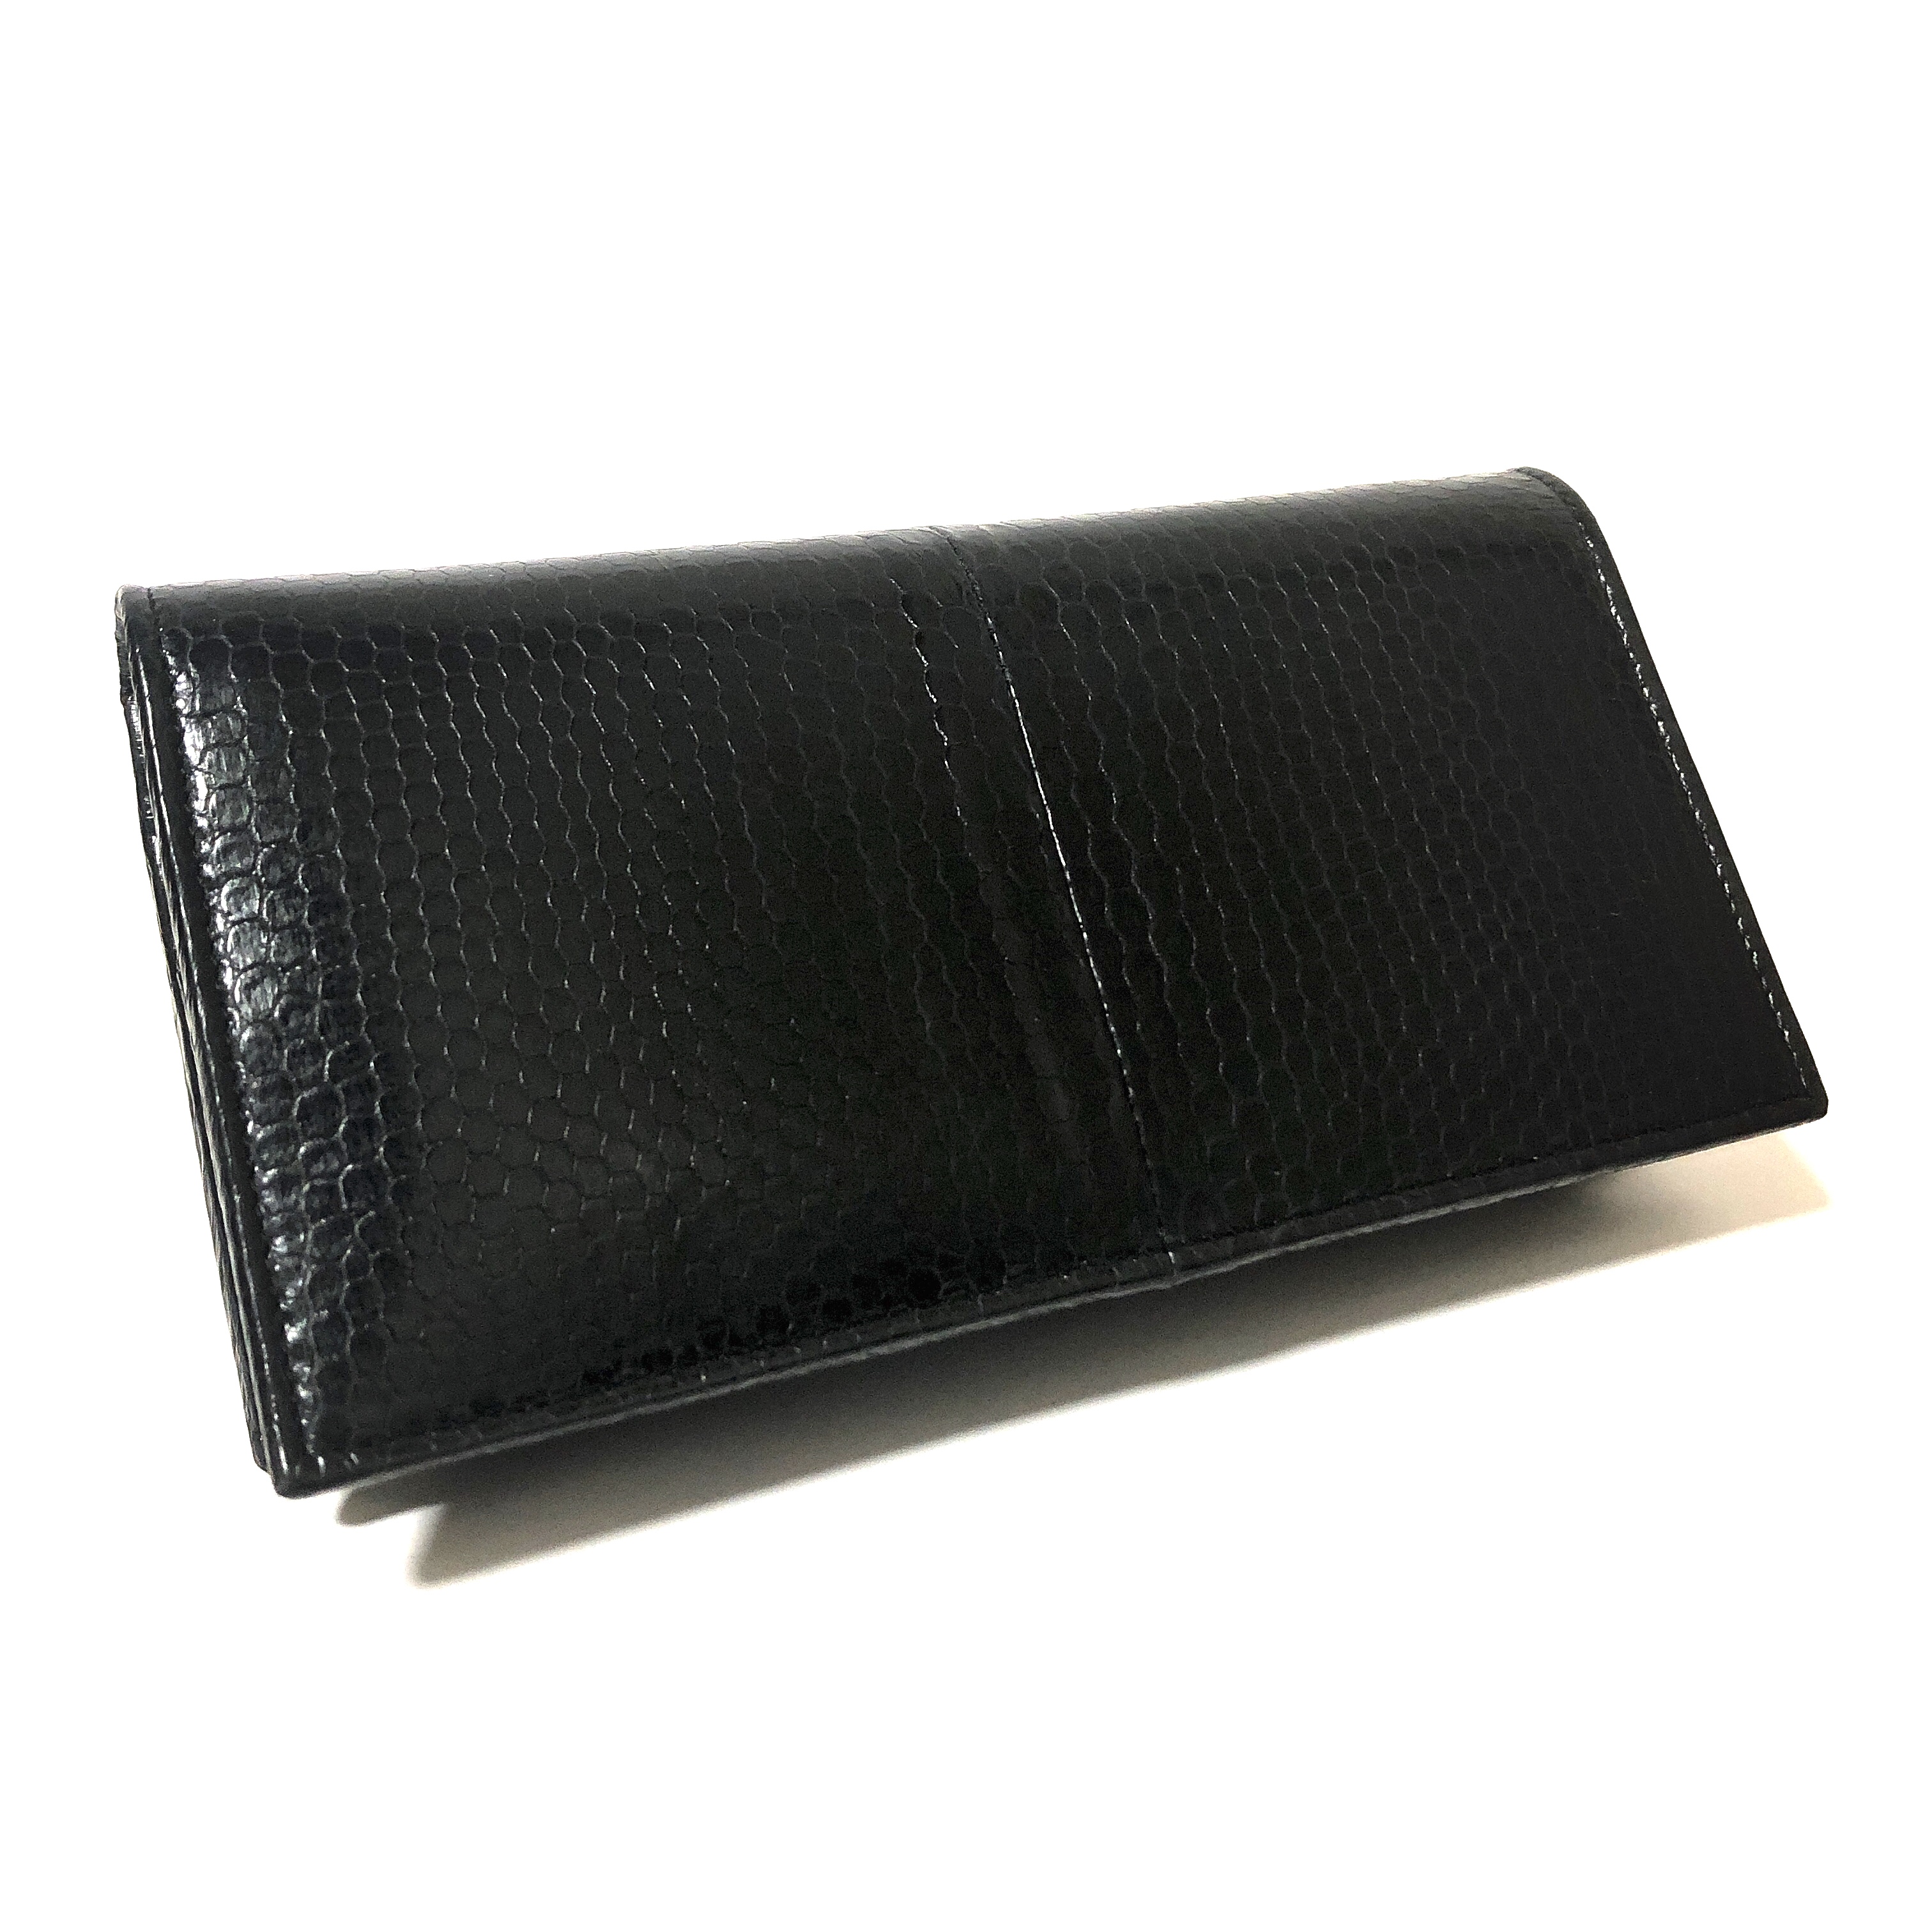 美しく、そしてかっこいいブラックカラーのウミヘビ長財布